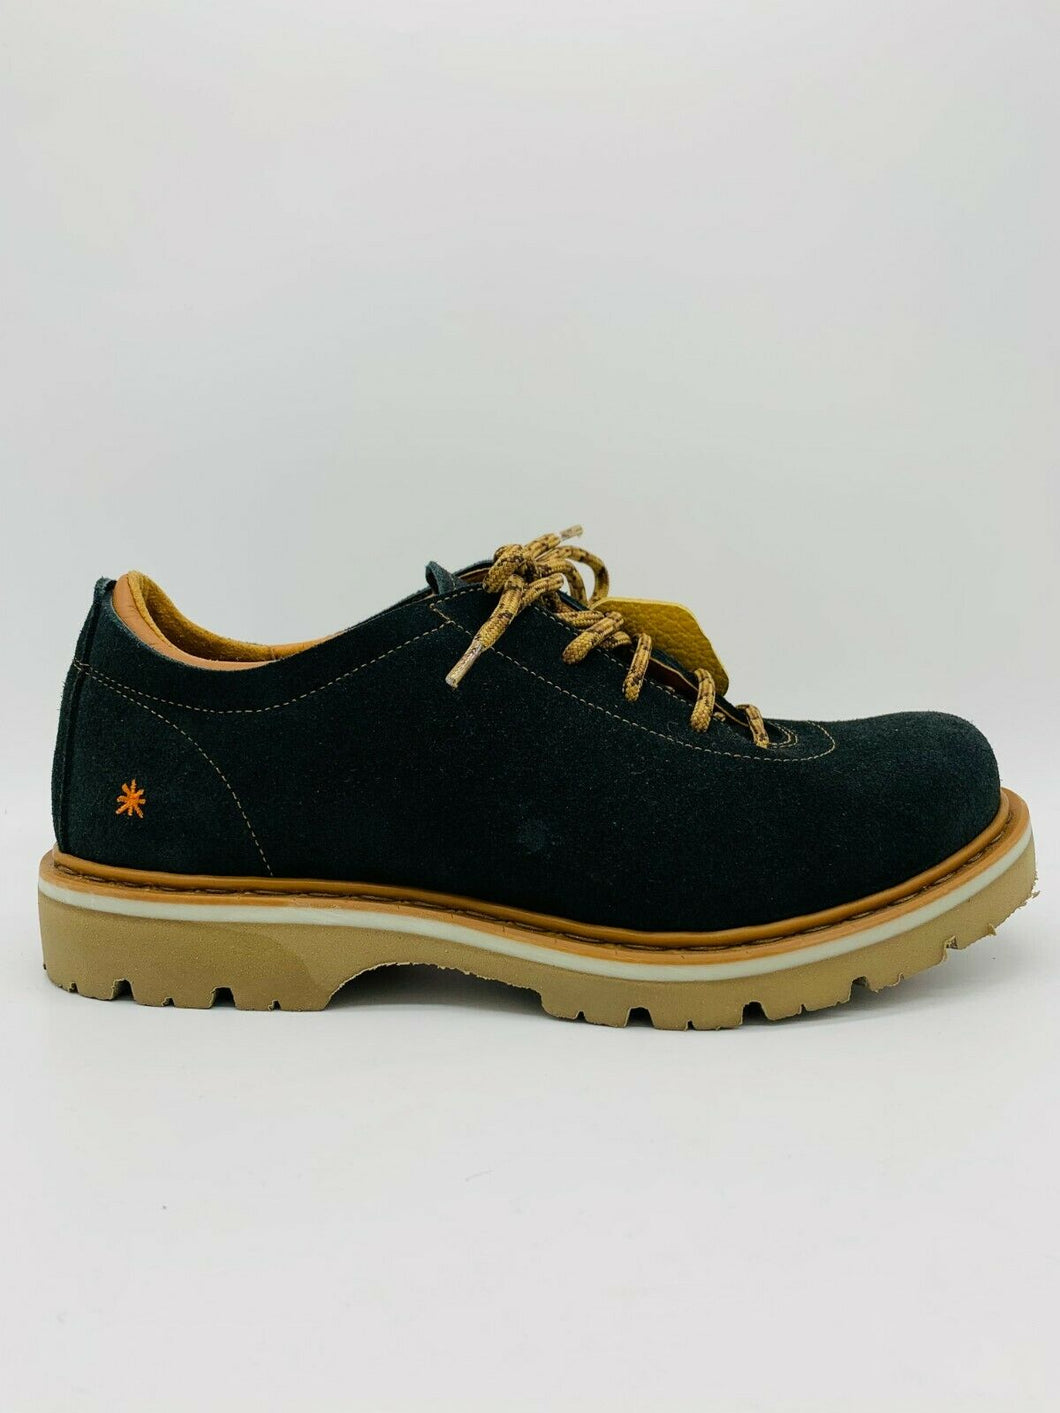 The Art Company Herrenschuhe Schuhe Boots Skin Back 1203 SOMA Made in Spain NEU